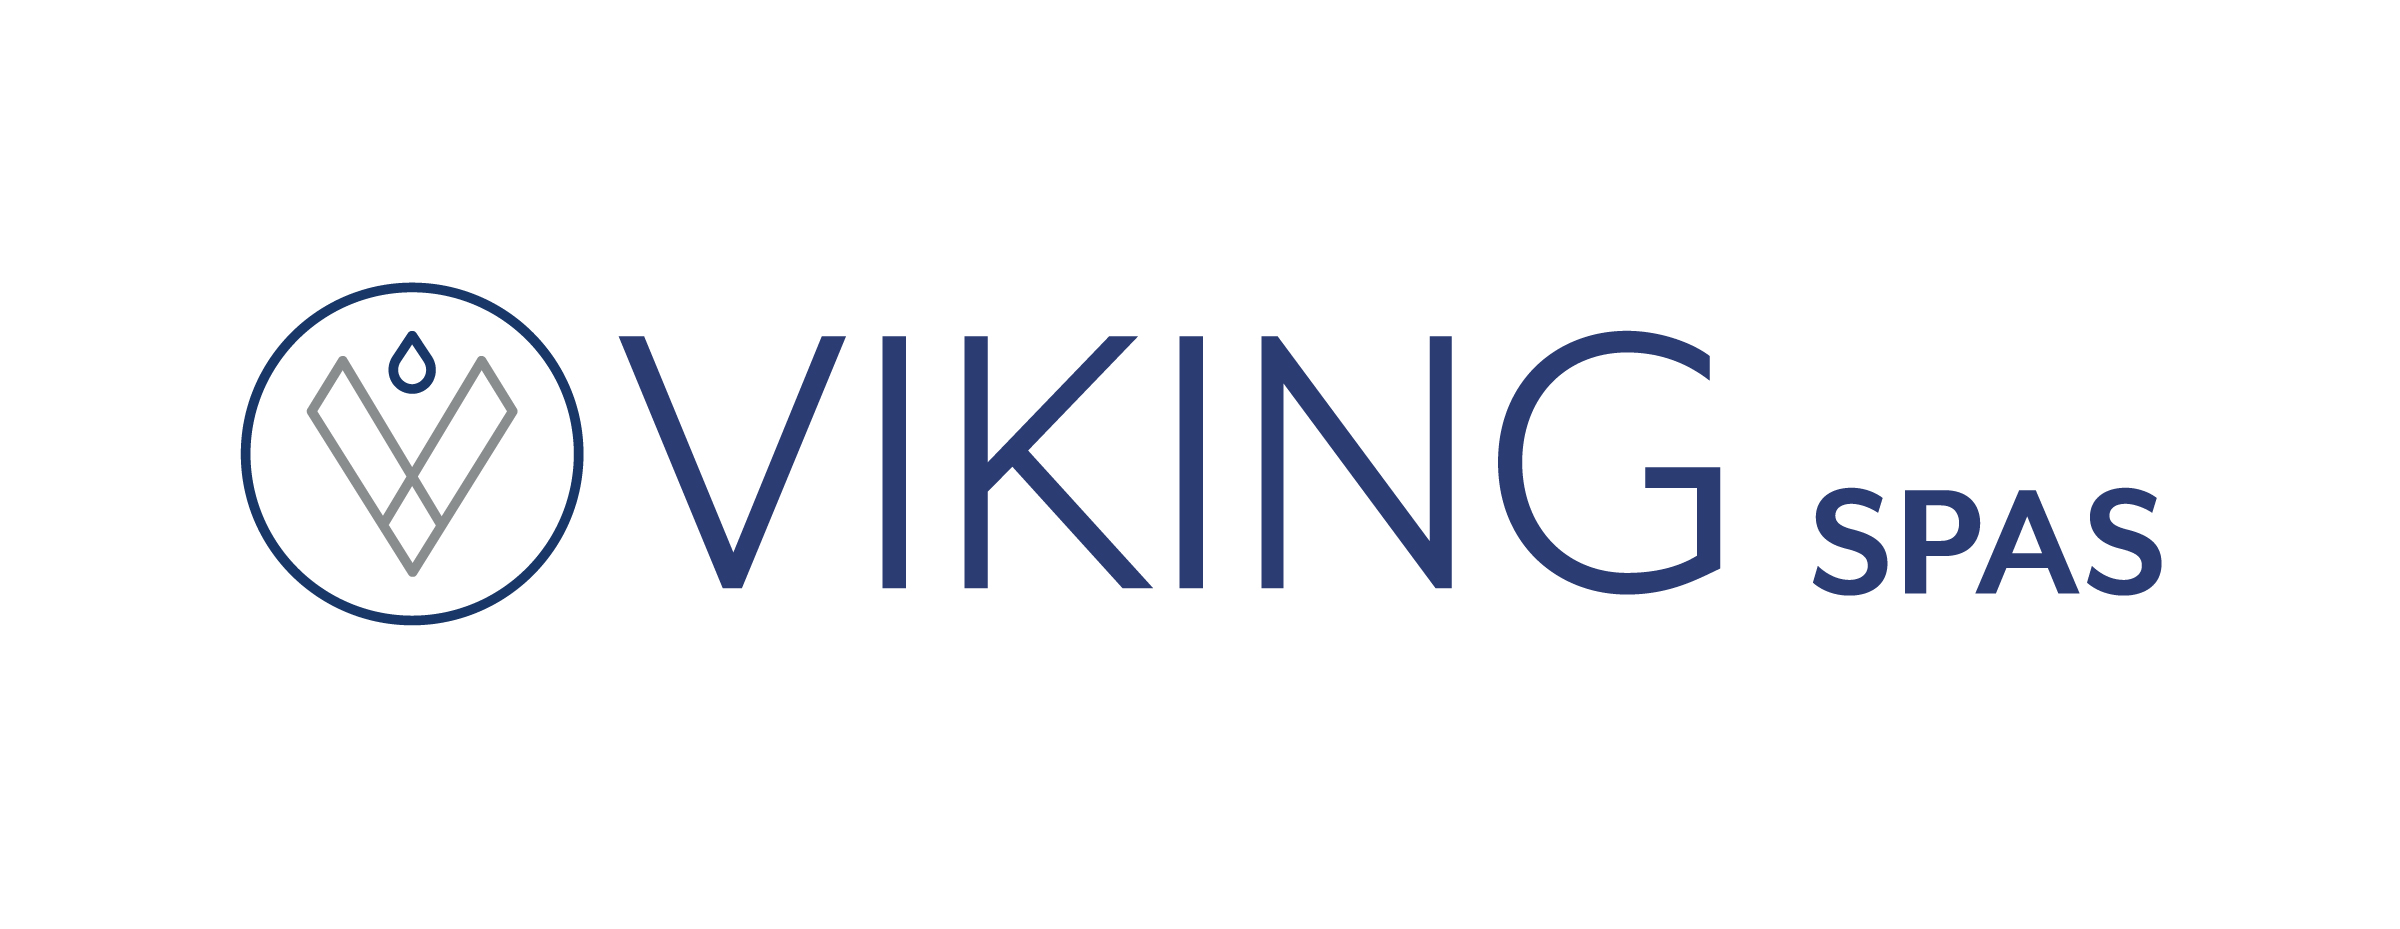 Visit Viking Spas Homepage